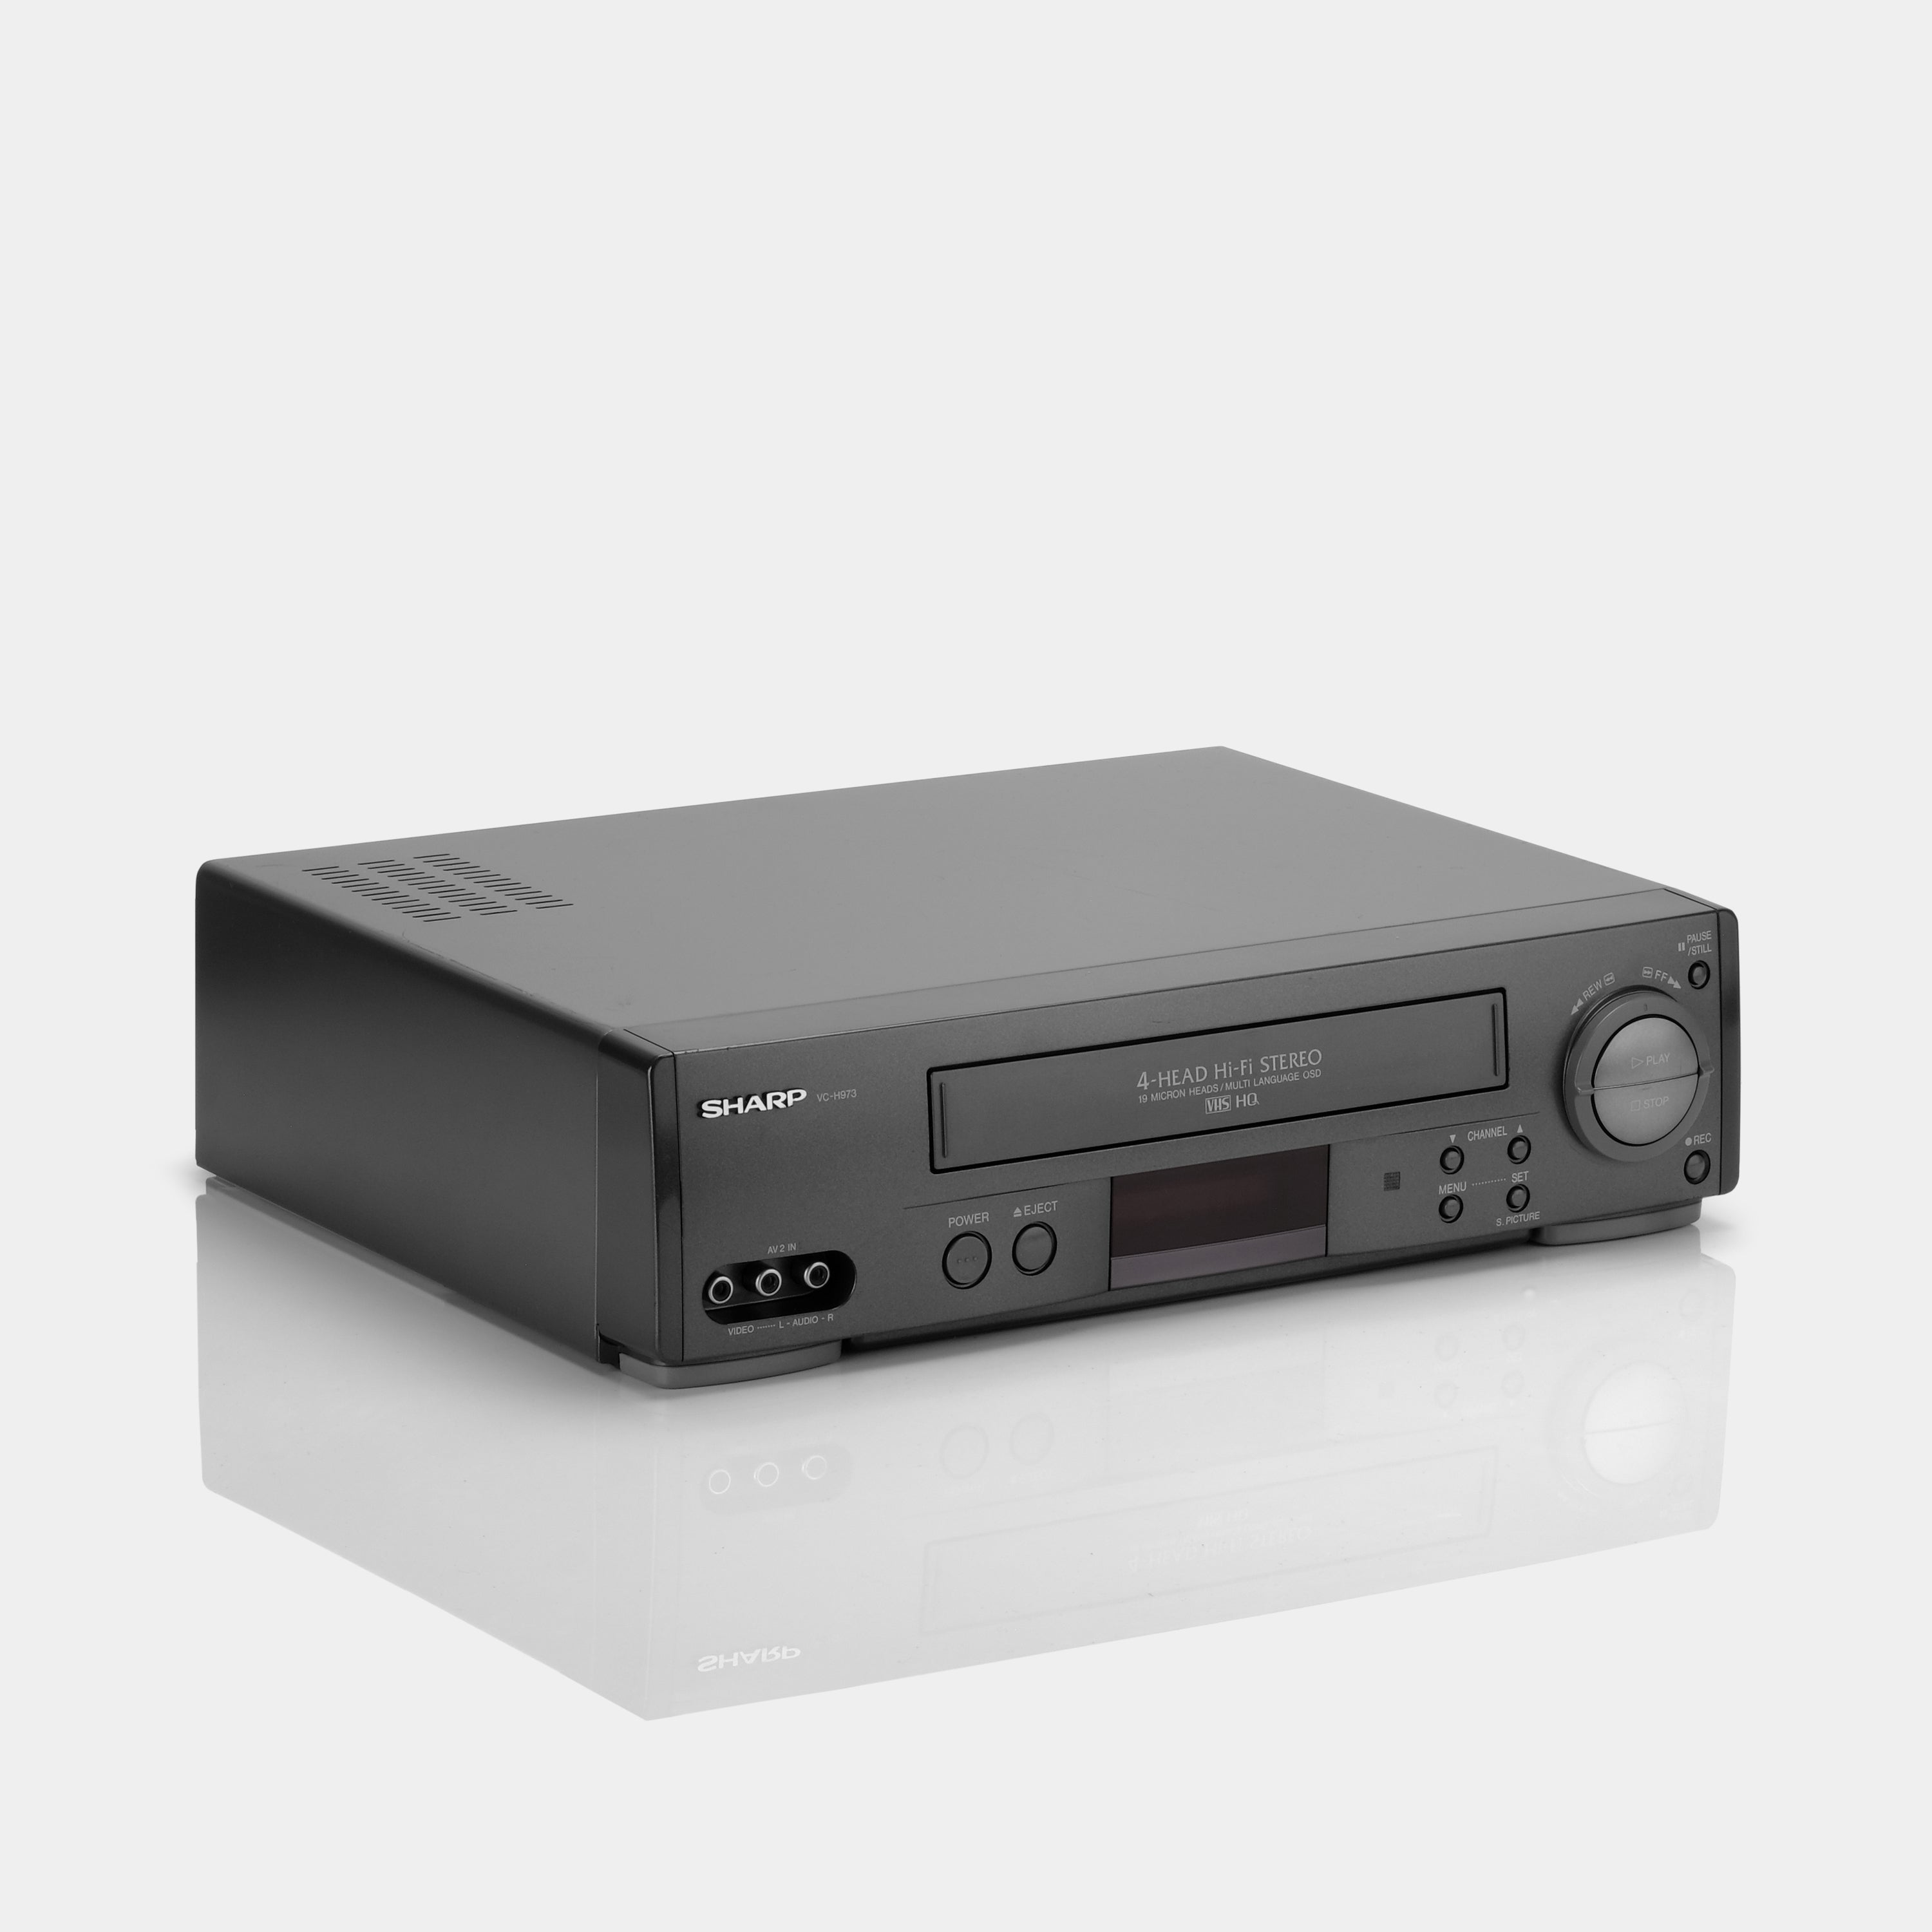 Sharp VC-H973U VCR VHS Player